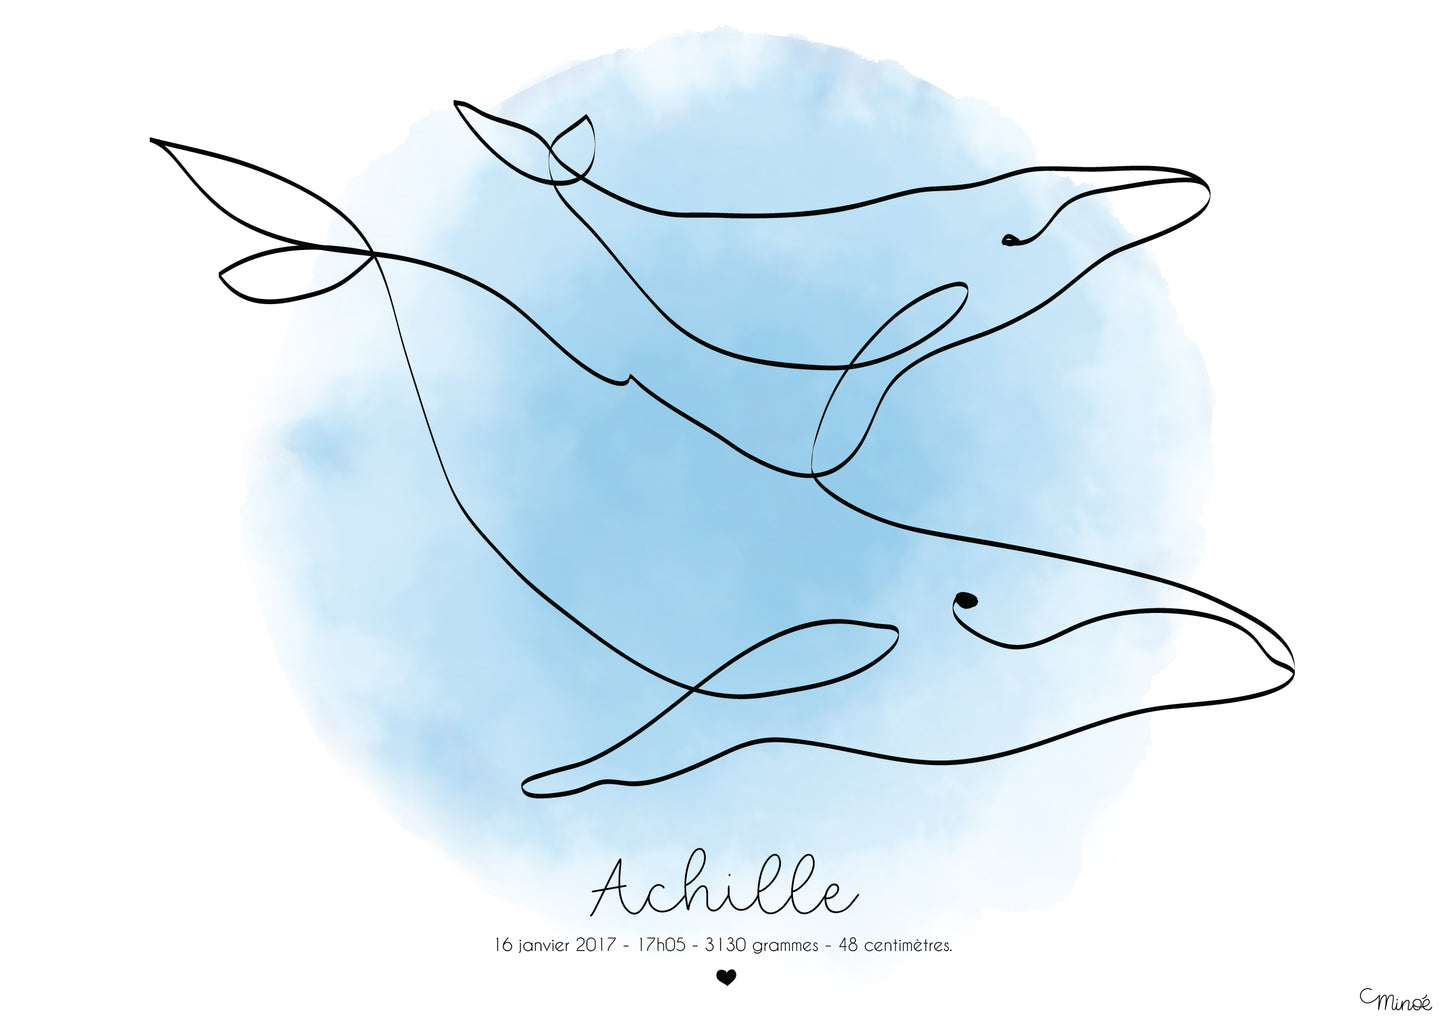 Illustration de naissance - Duo de baleines